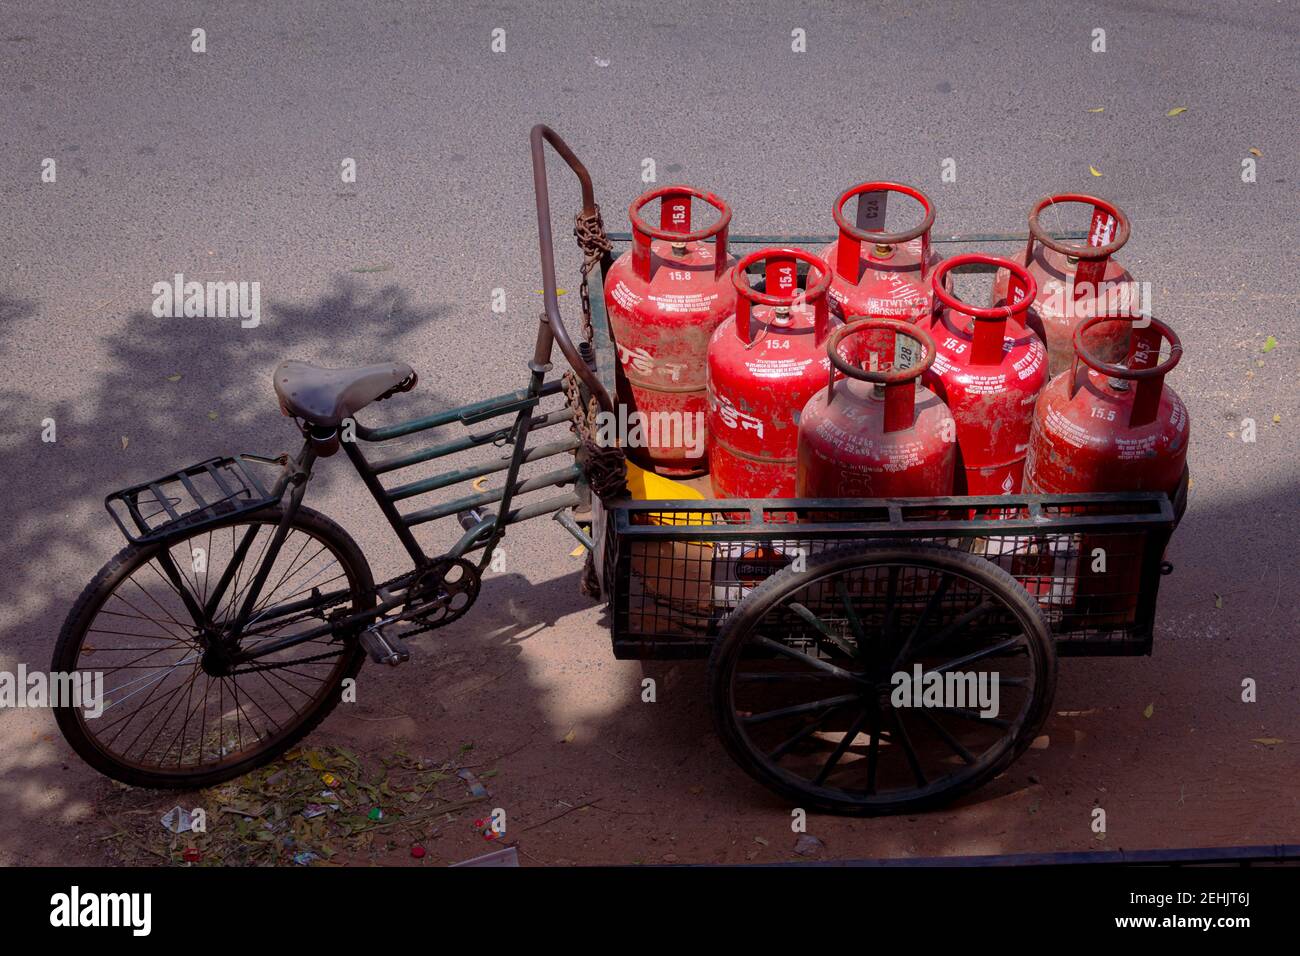 Chennai, Tamil Nadu, Inde - février 20 2021 : bouteilles de gaz GPL pour distribution à domicile dans un chariot à cycle. Gaz GPL utilisé pour la cuisson domestique Banque D'Images